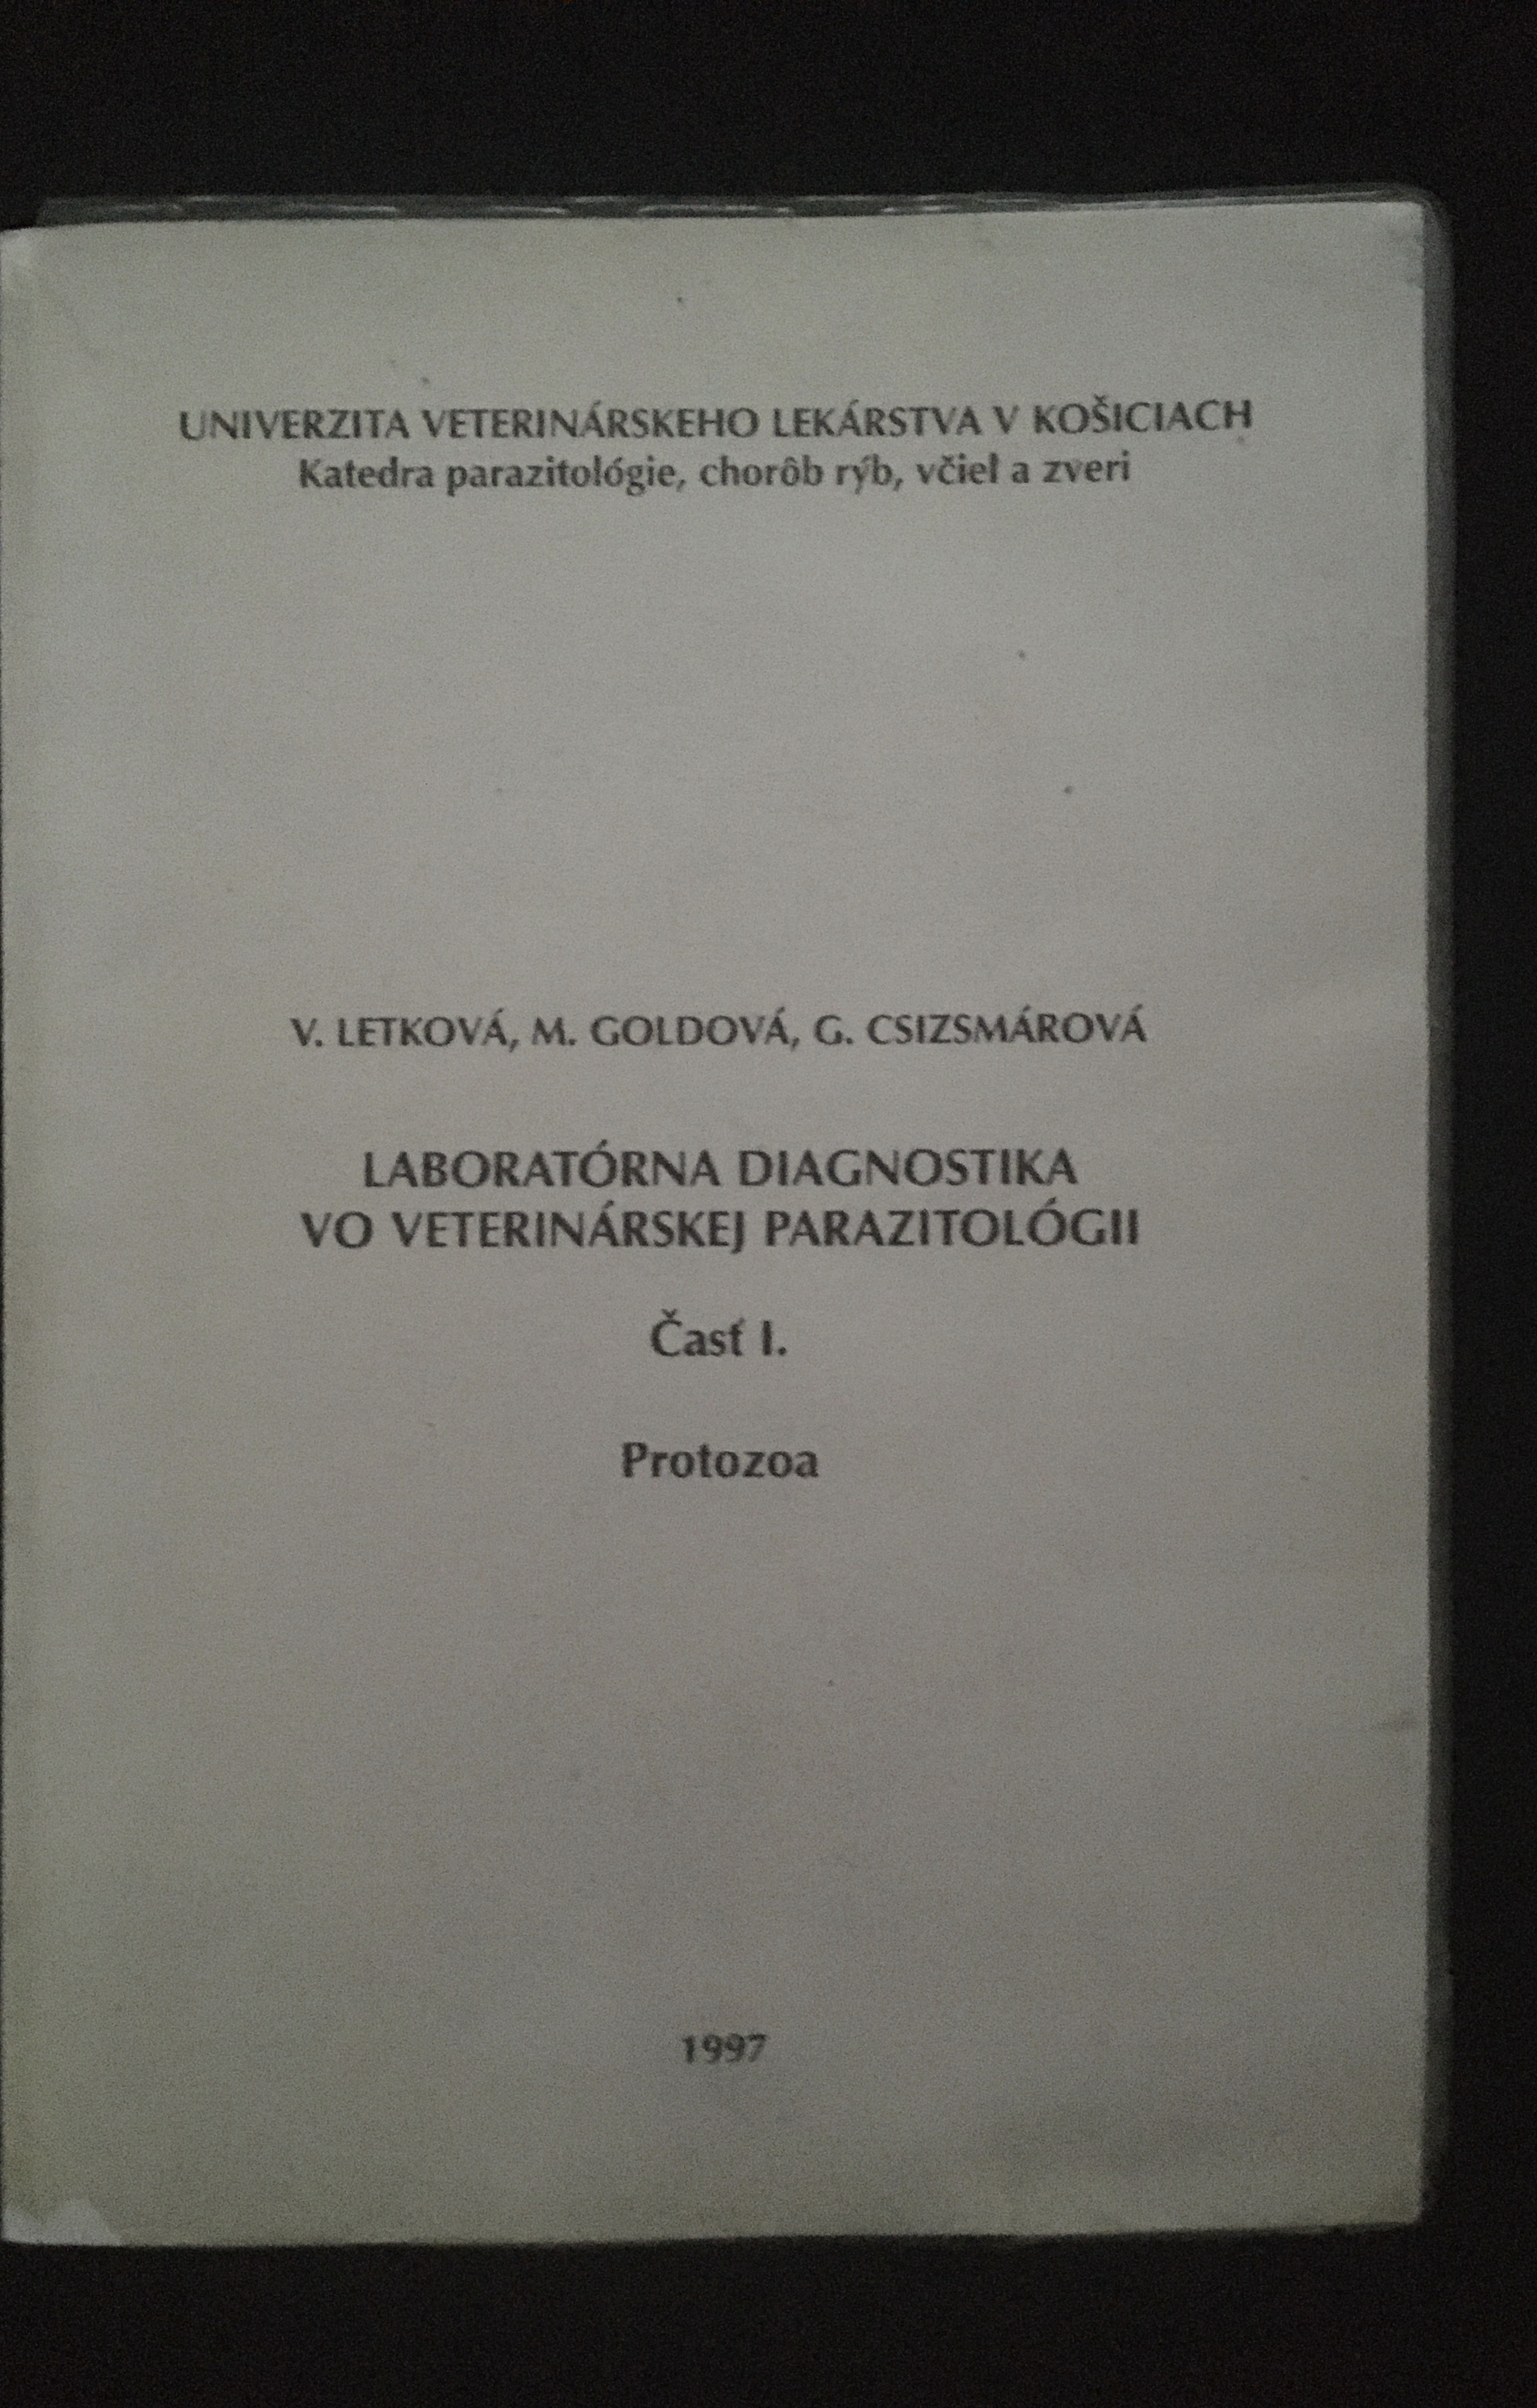 Letková,Goldová,Csizsmárová-Laboratórna diagnostika vo vet. parazitológii